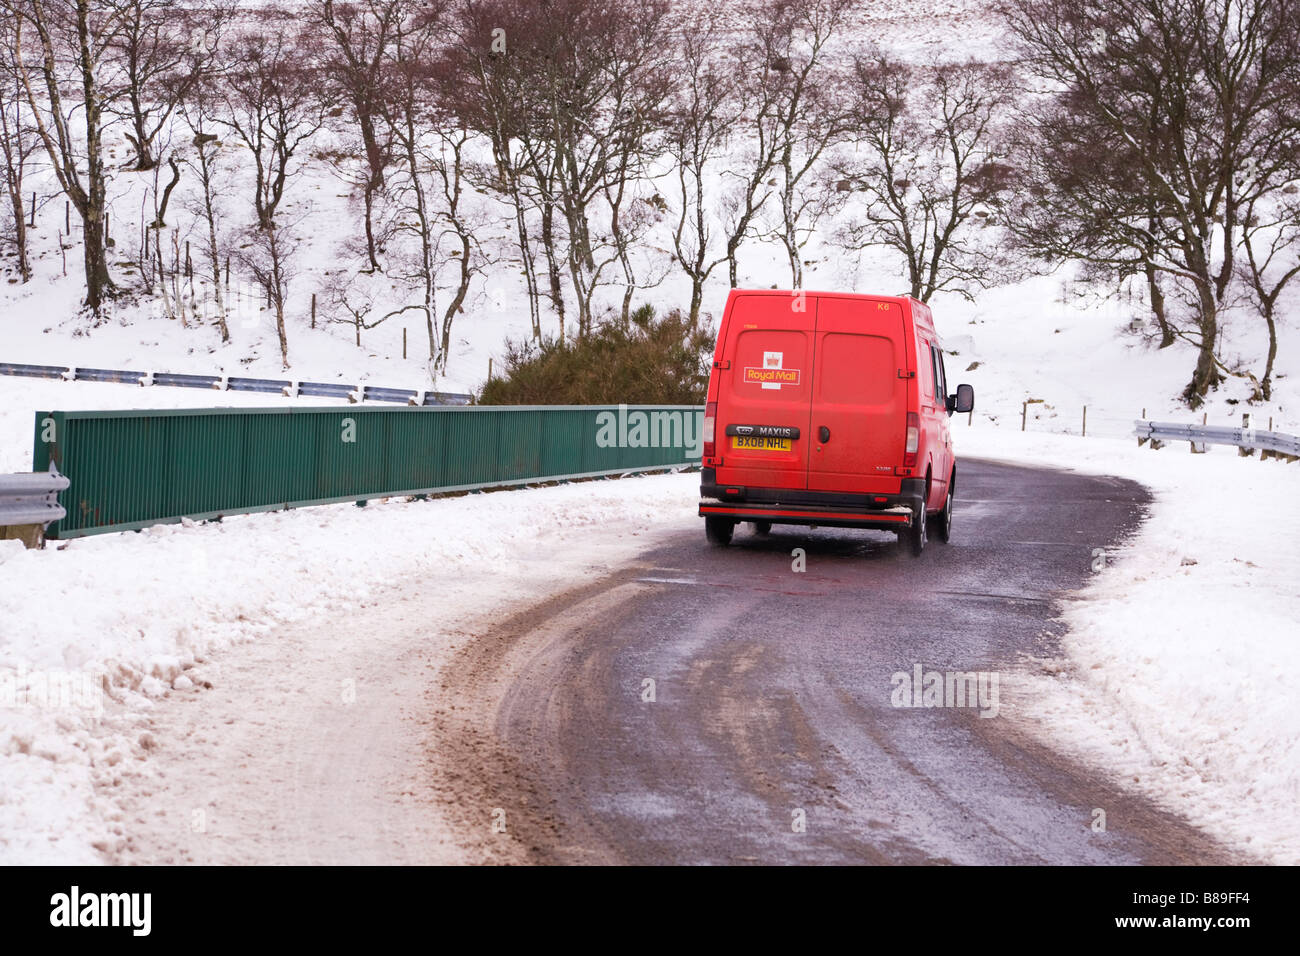 Livraison de Royal Mail à des endroits ruraux éloignés à Glen Clova, Angus, Écosse, sur une route de campagne enneigée. Banque D'Images